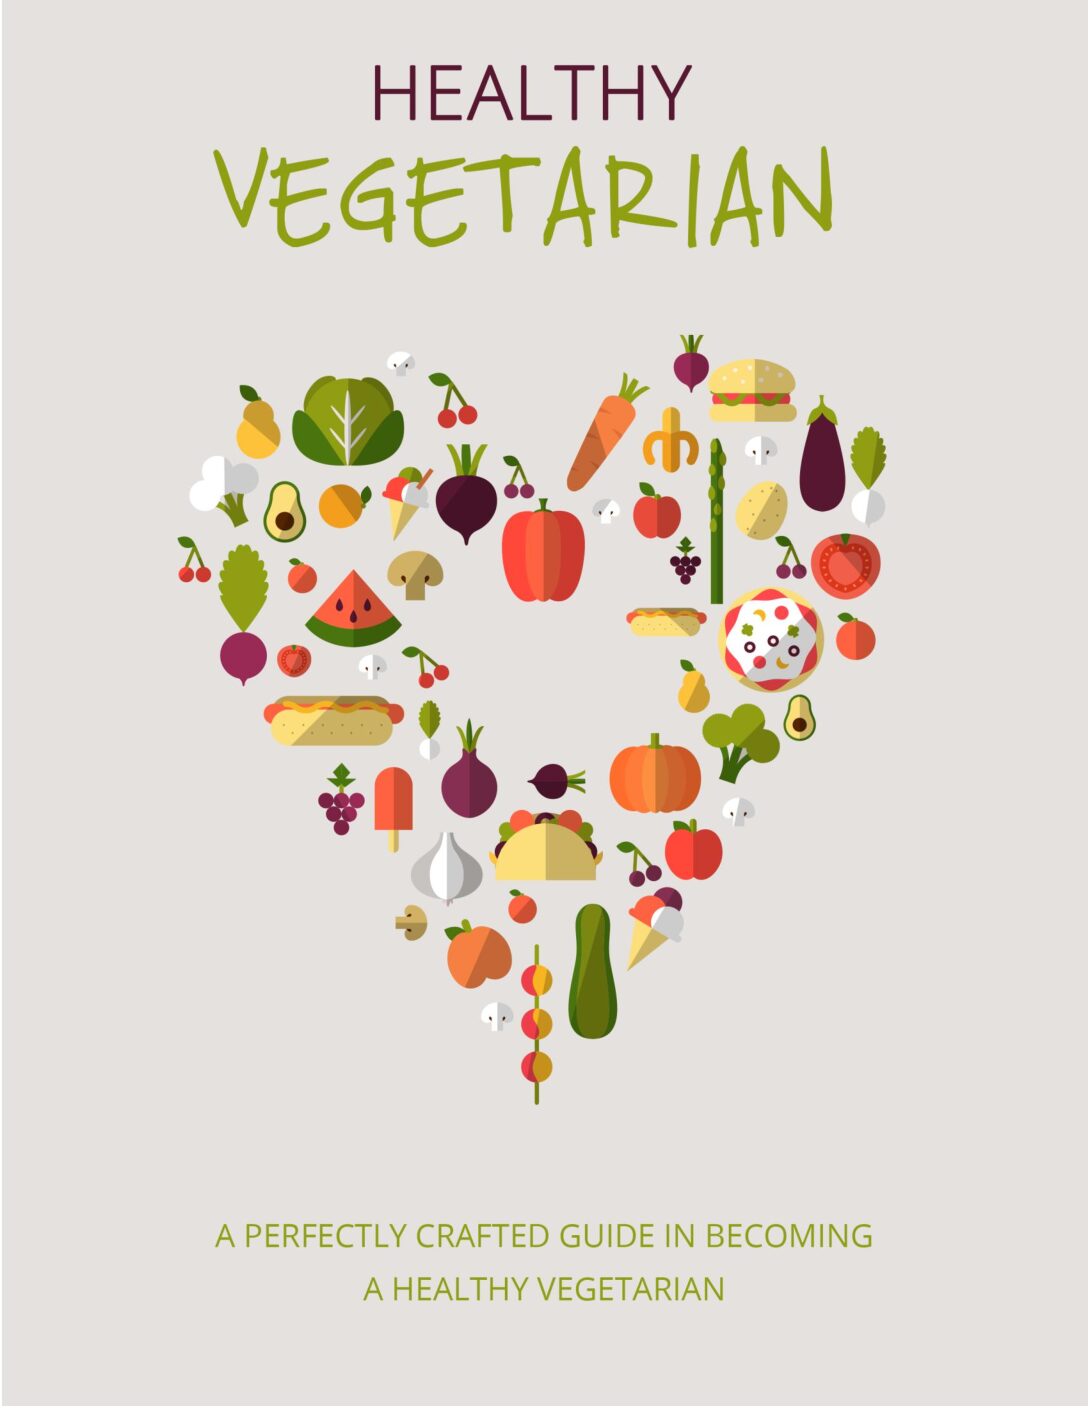 Healthy Vegetarian Living